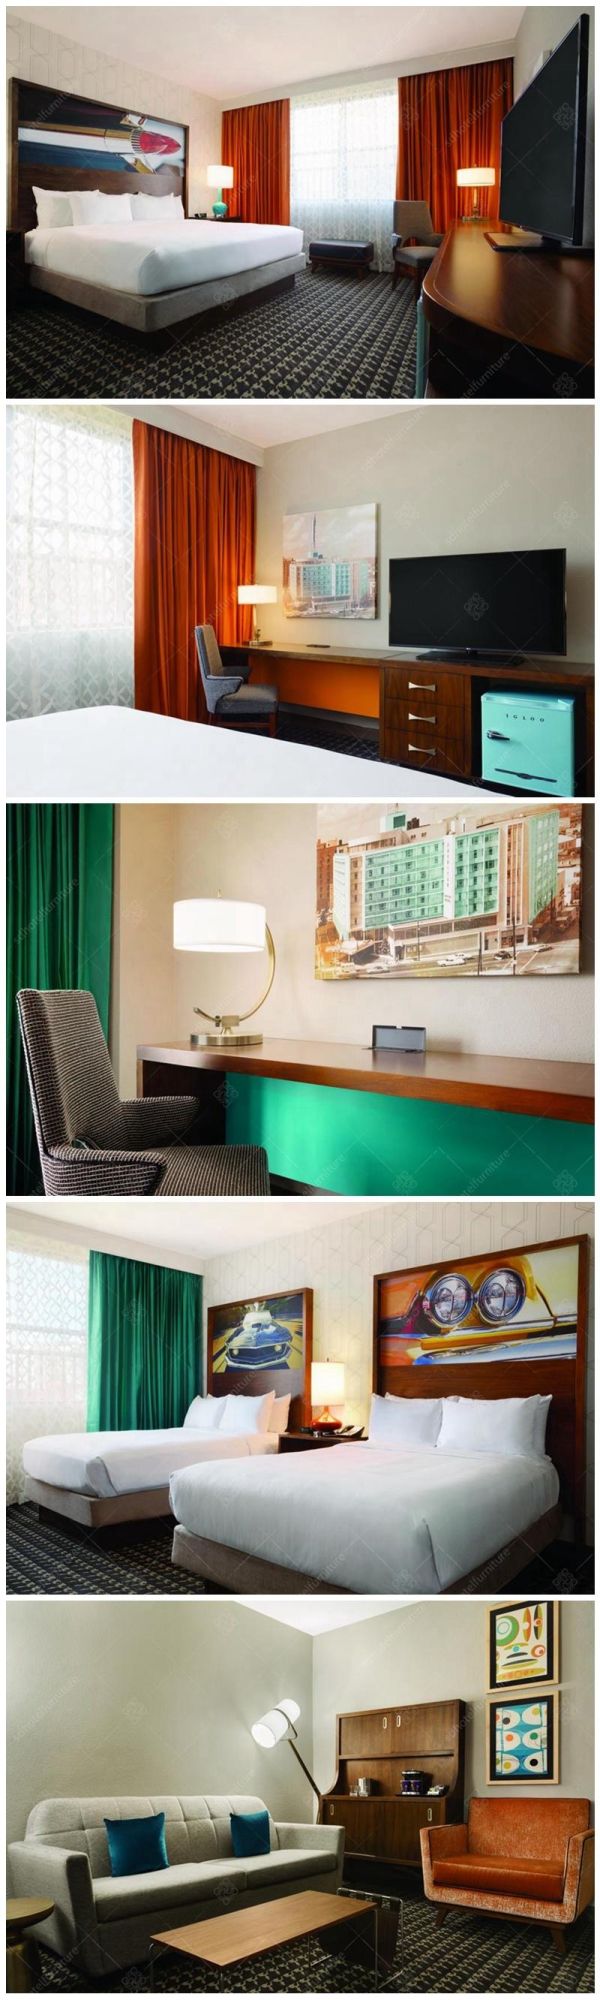 Modern Design City Hotel Room Furniture Sets Commercial Furniture Sets